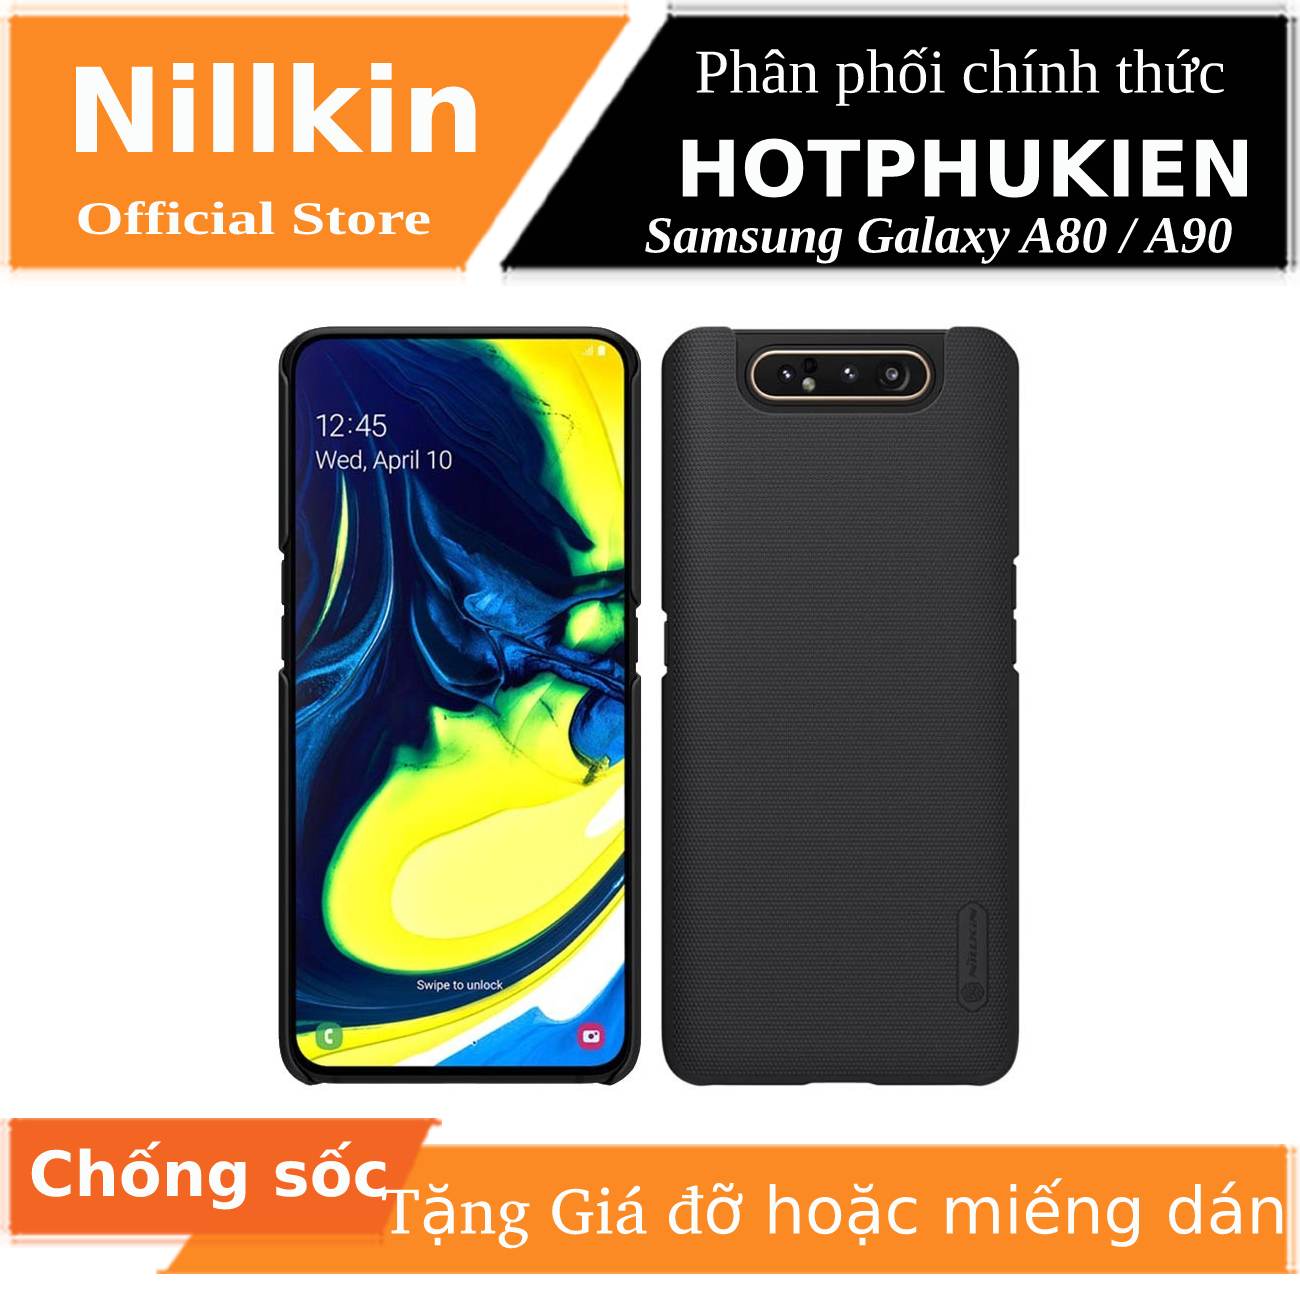 Ốp Lưng Sần chống sốc cho Samsung Galaxy A80 / A90 hiệu Nillkin Super Frosted Shield